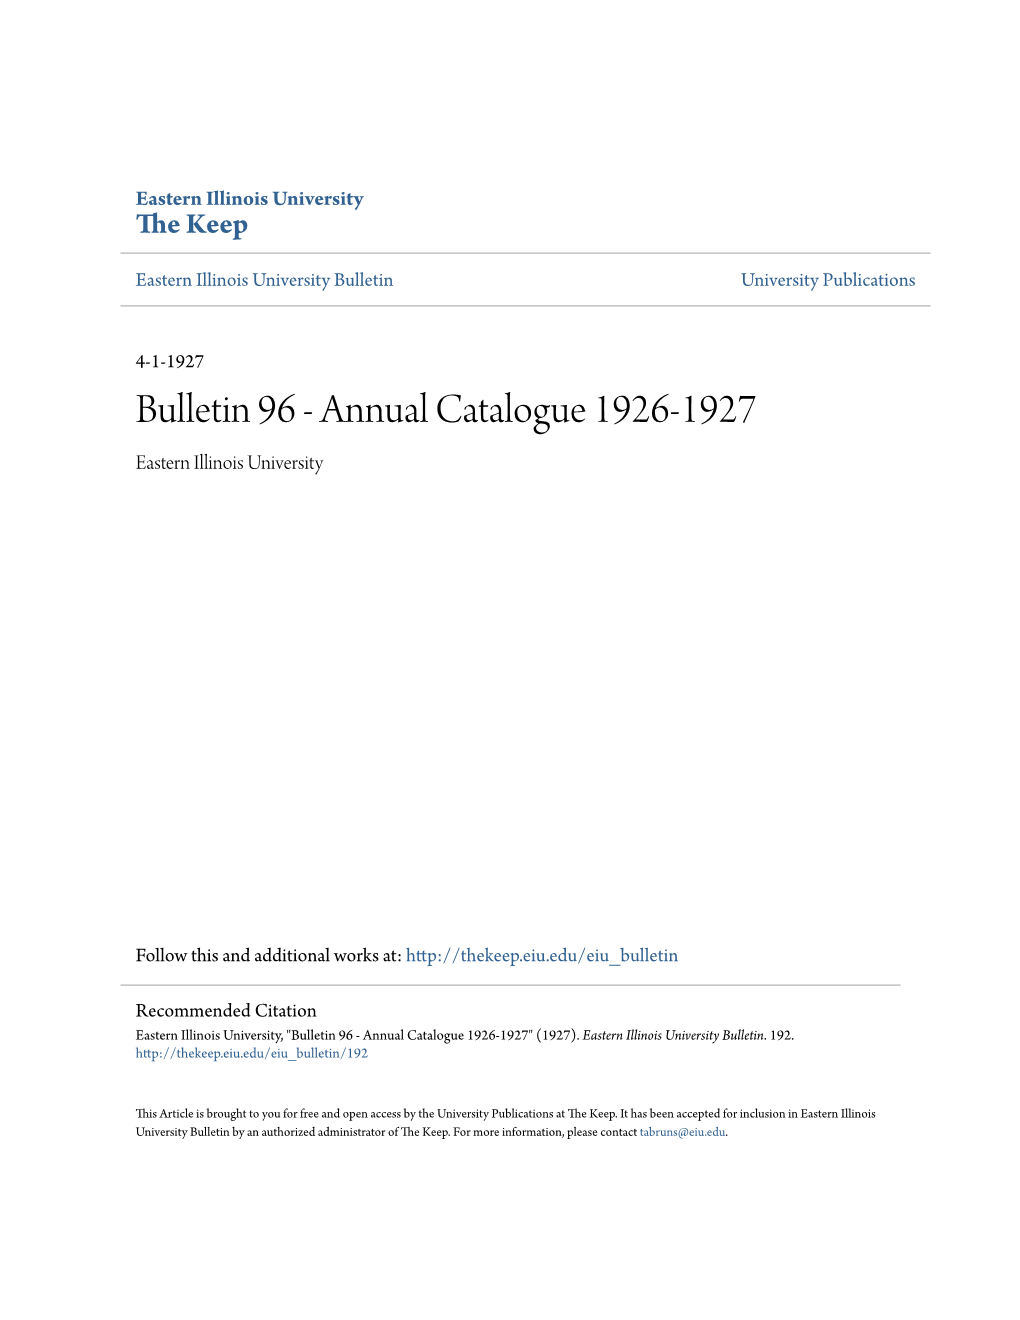 Bulletin 96 - Annual Catalogue 1926-1927 Eastern Illinois University